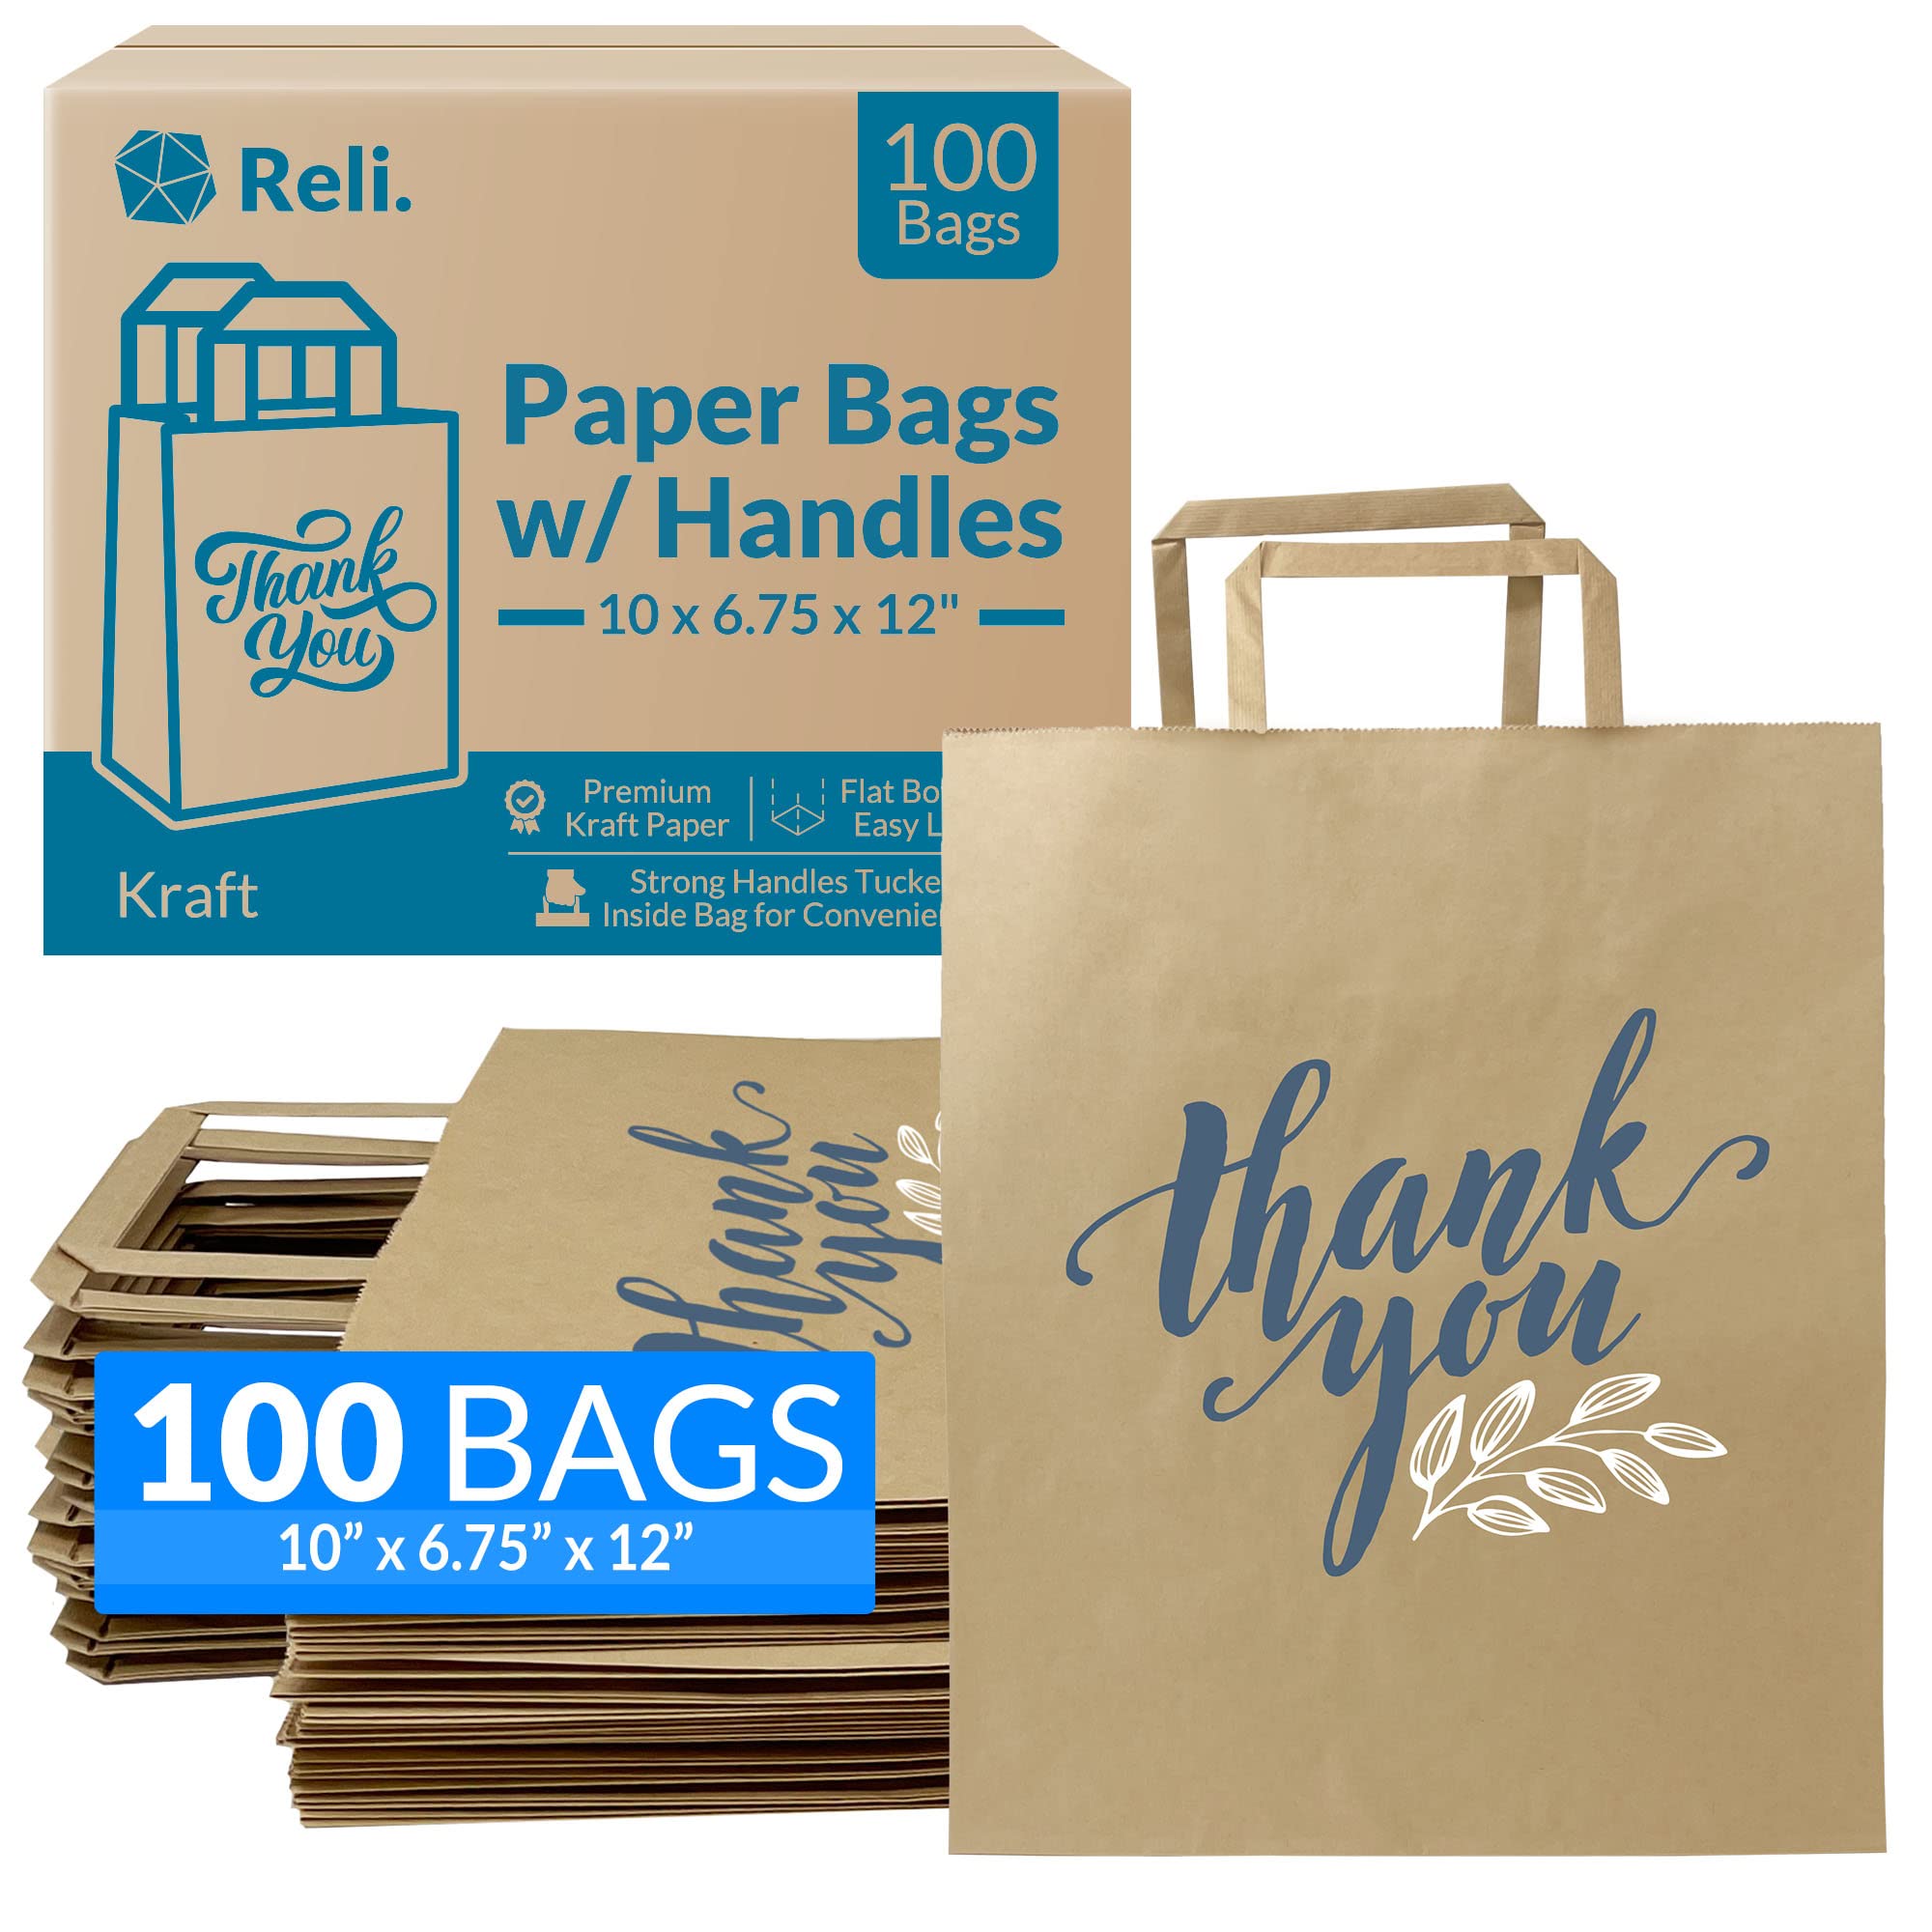 Paper Bags With Handleskraft Bags With Handlesbrown Kraft - Etsy